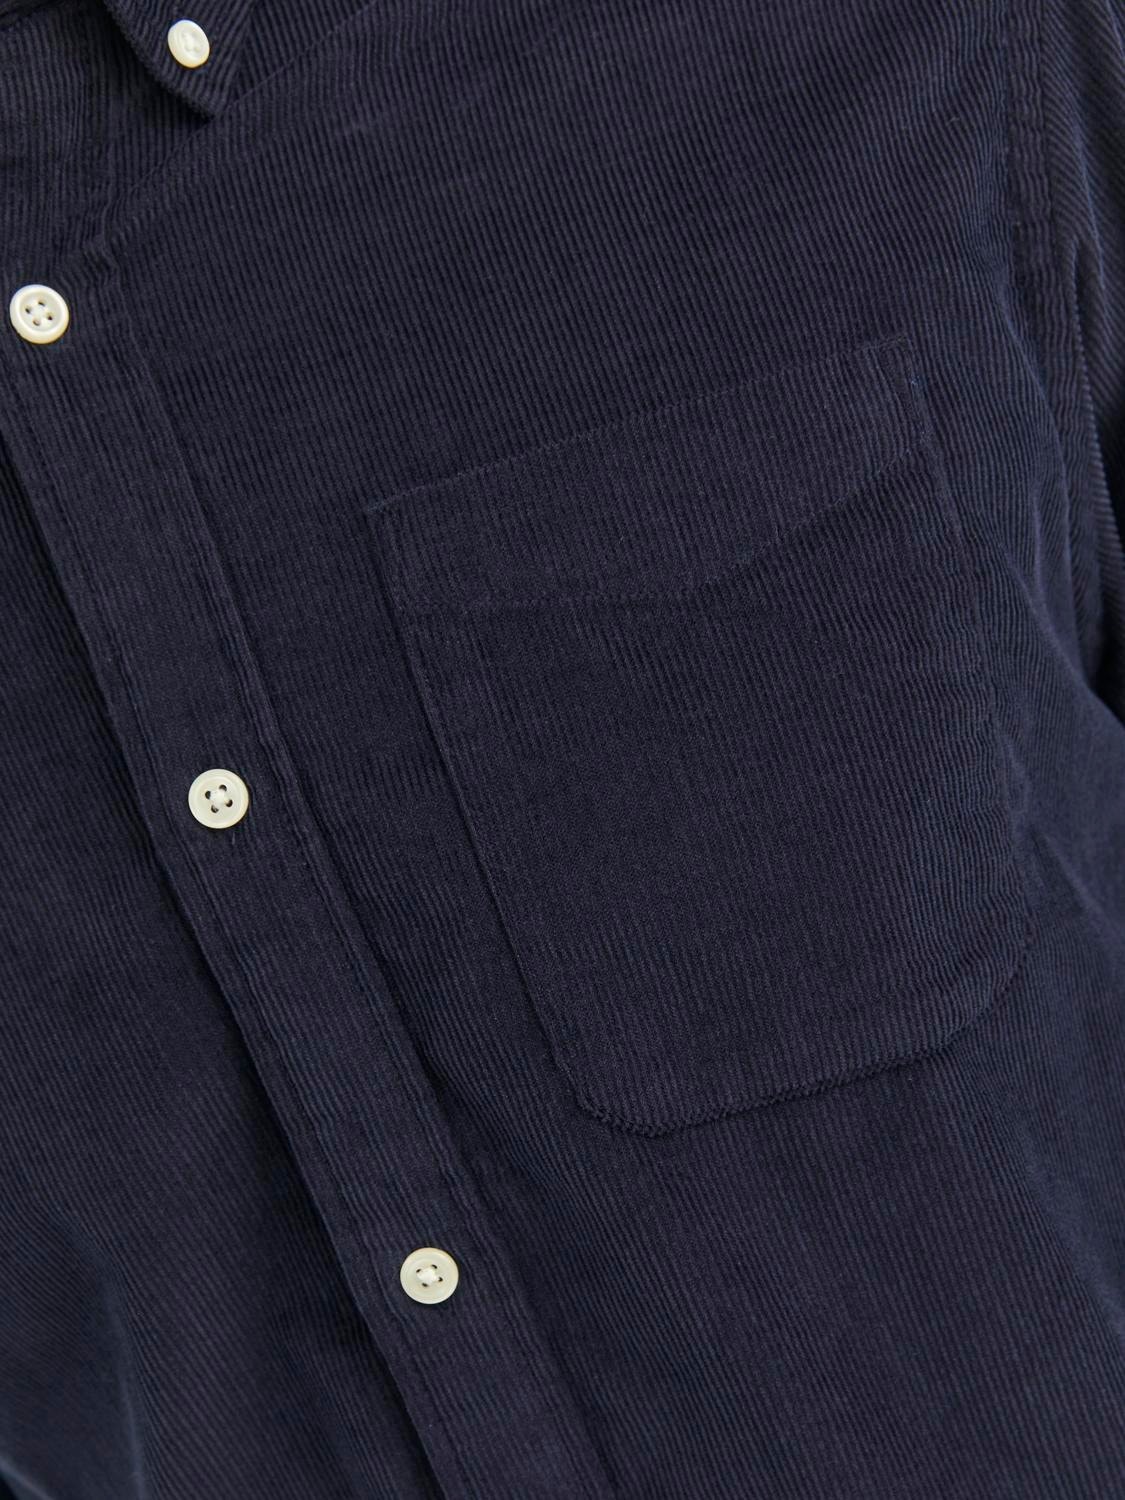 Jack & Jones Slim Fit Skjorte -Navy Blazer - 12235981